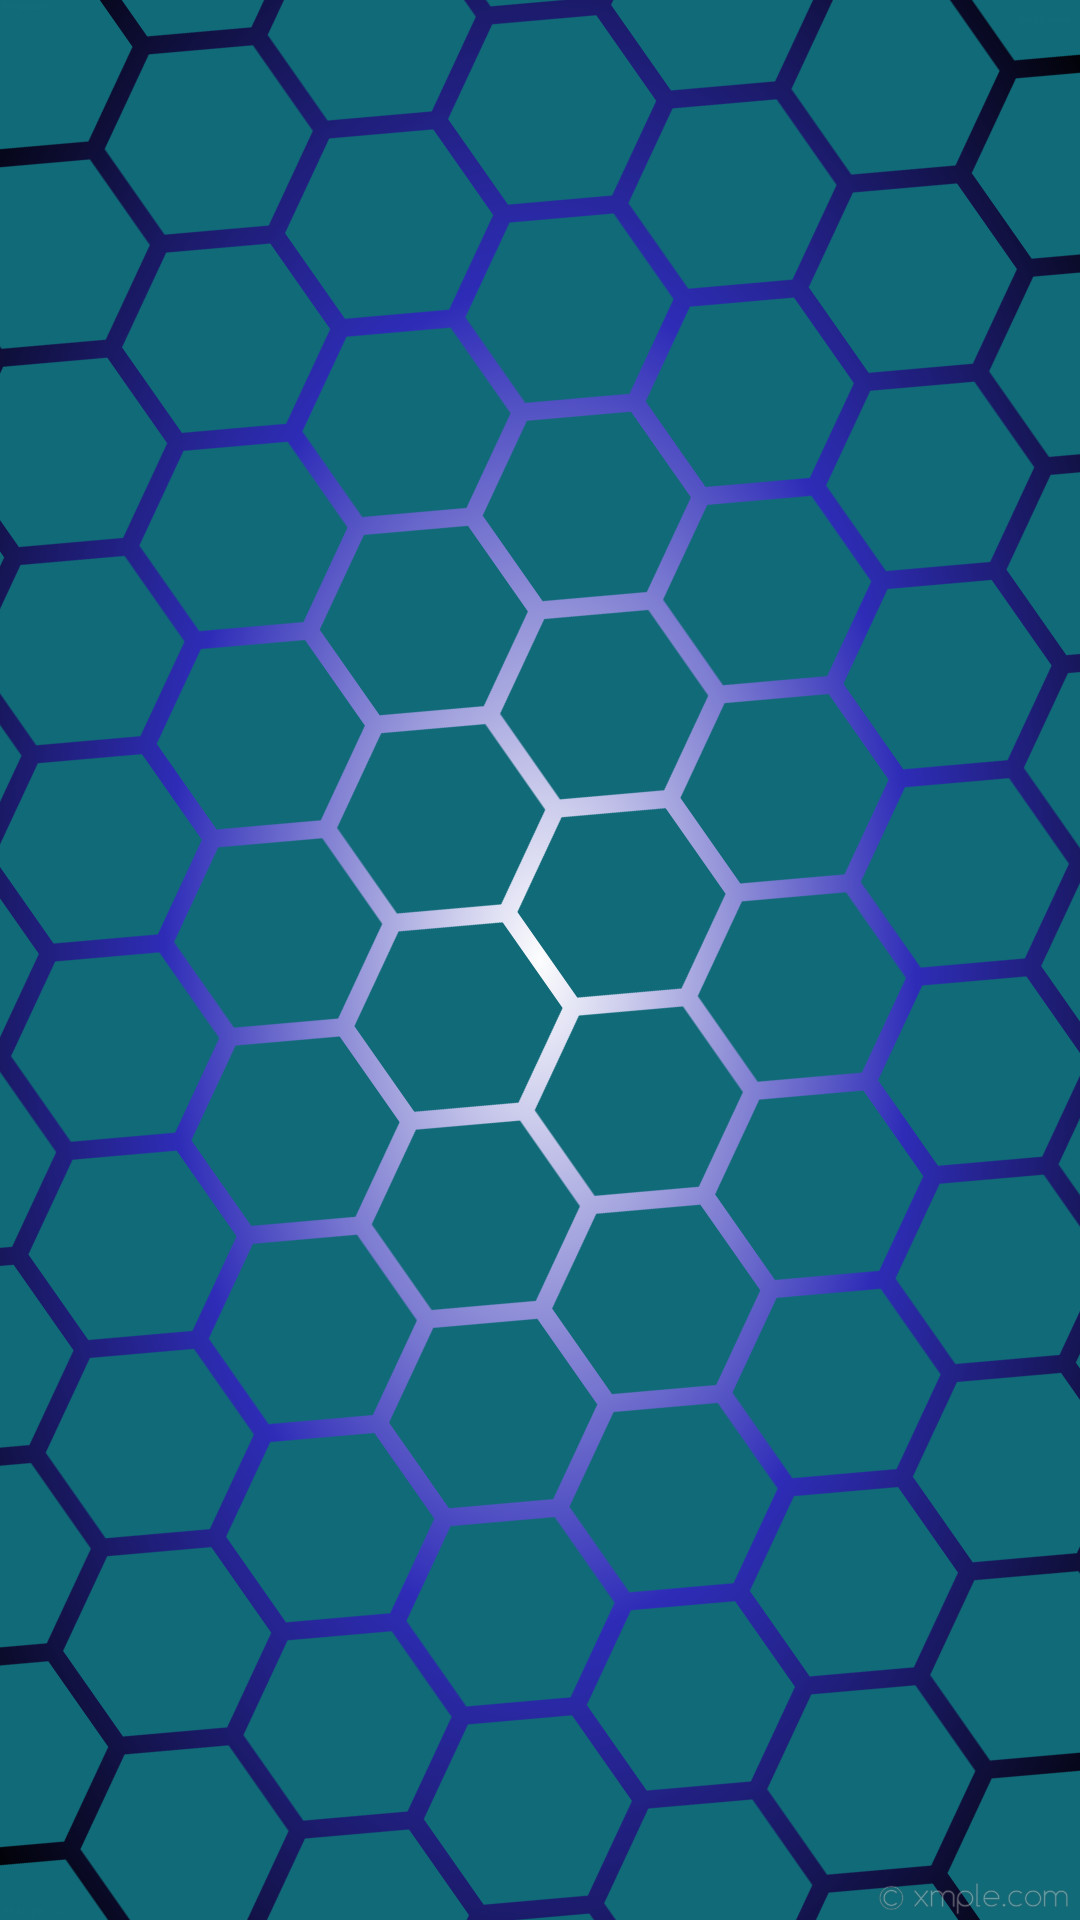 1080x1920 wallpaper glow hexagon gradient black white cyan blue #106a78 #ffffff  #2f2cb8 diagonal 35